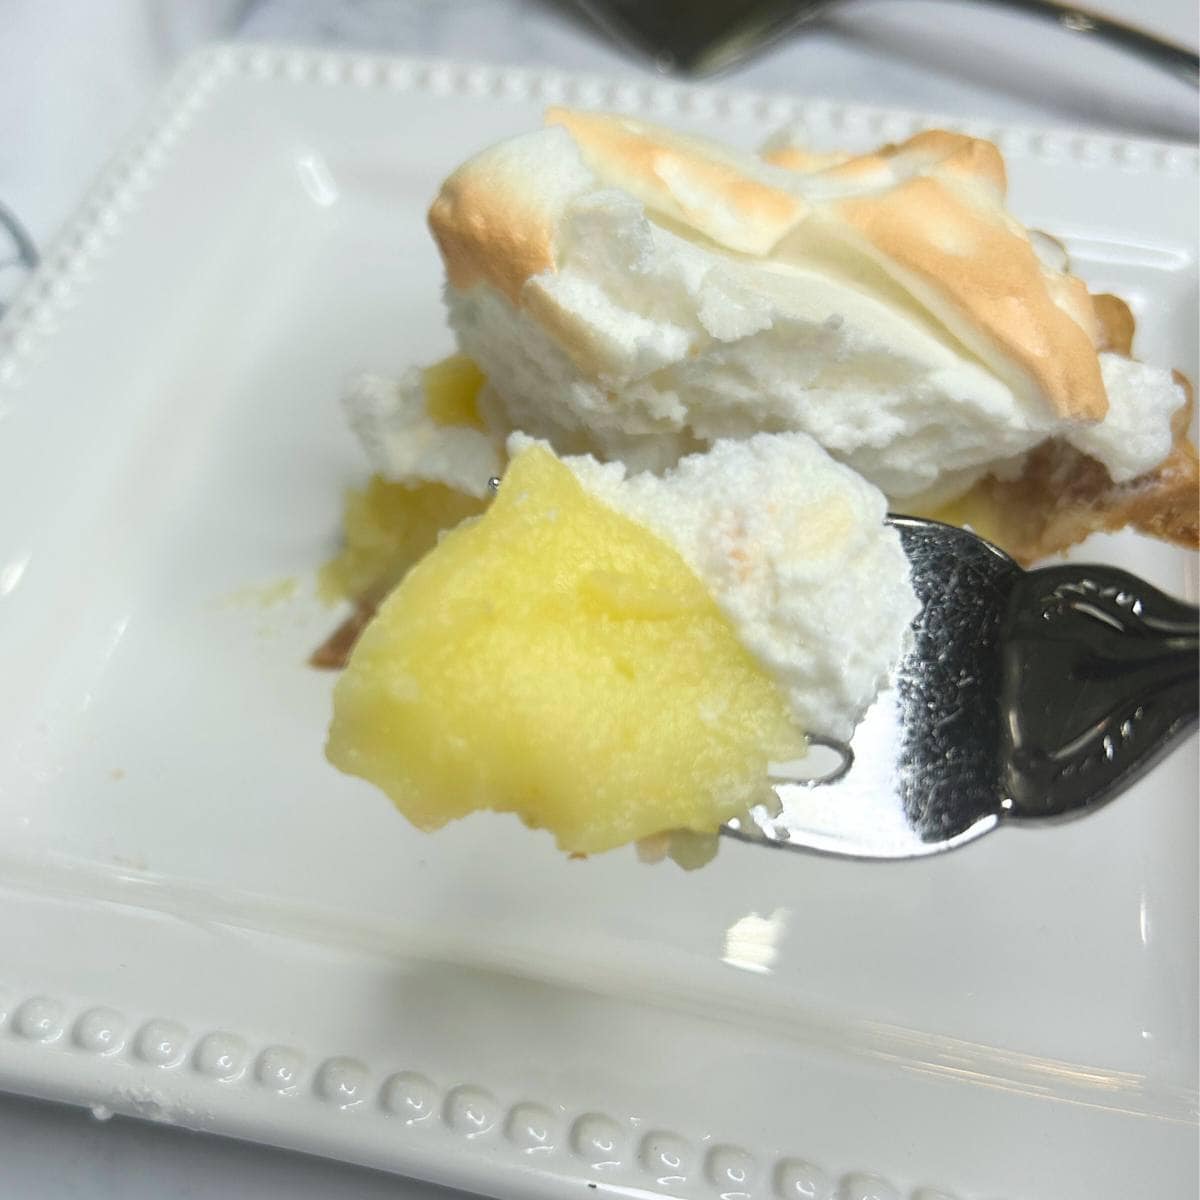 Betty Crocker’s Lemon Meringue Pie